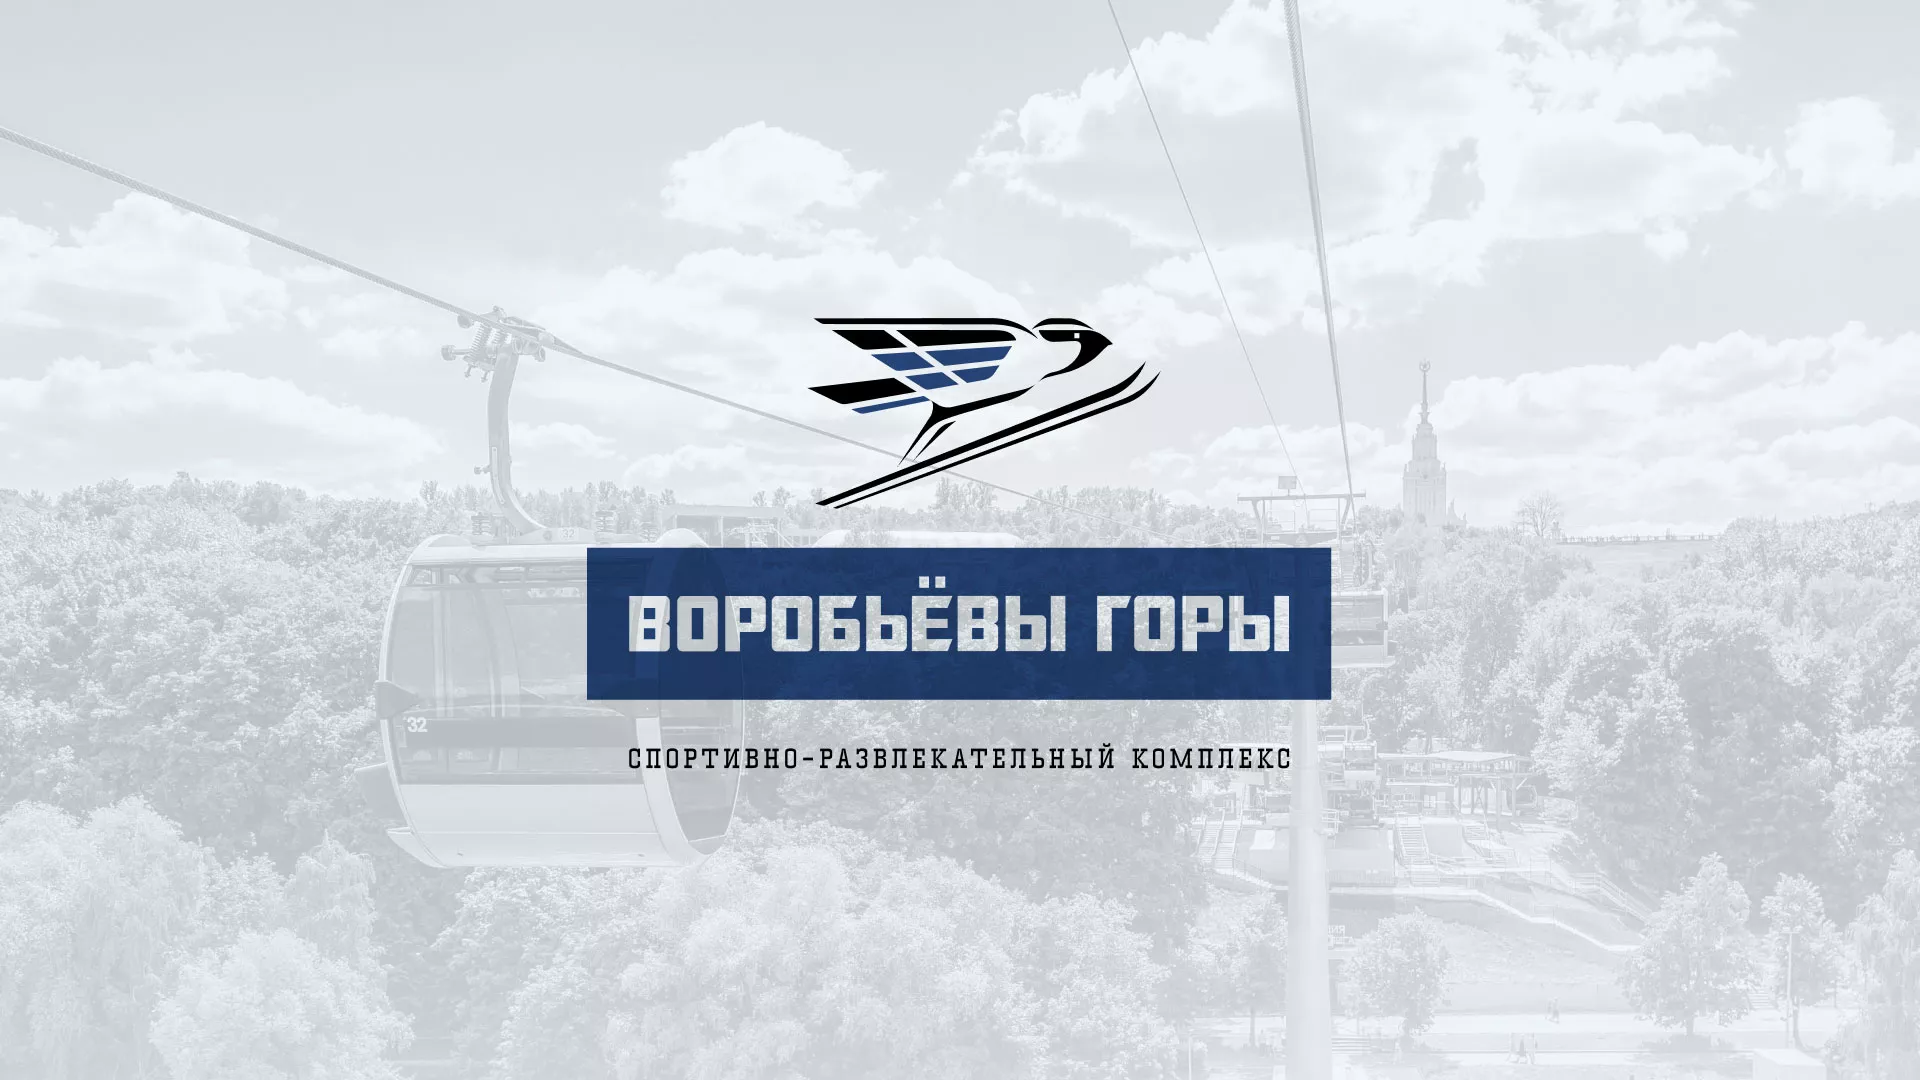 Разработка сайта в Жирновске для спортивно-развлекательного комплекса «Воробьёвы горы»